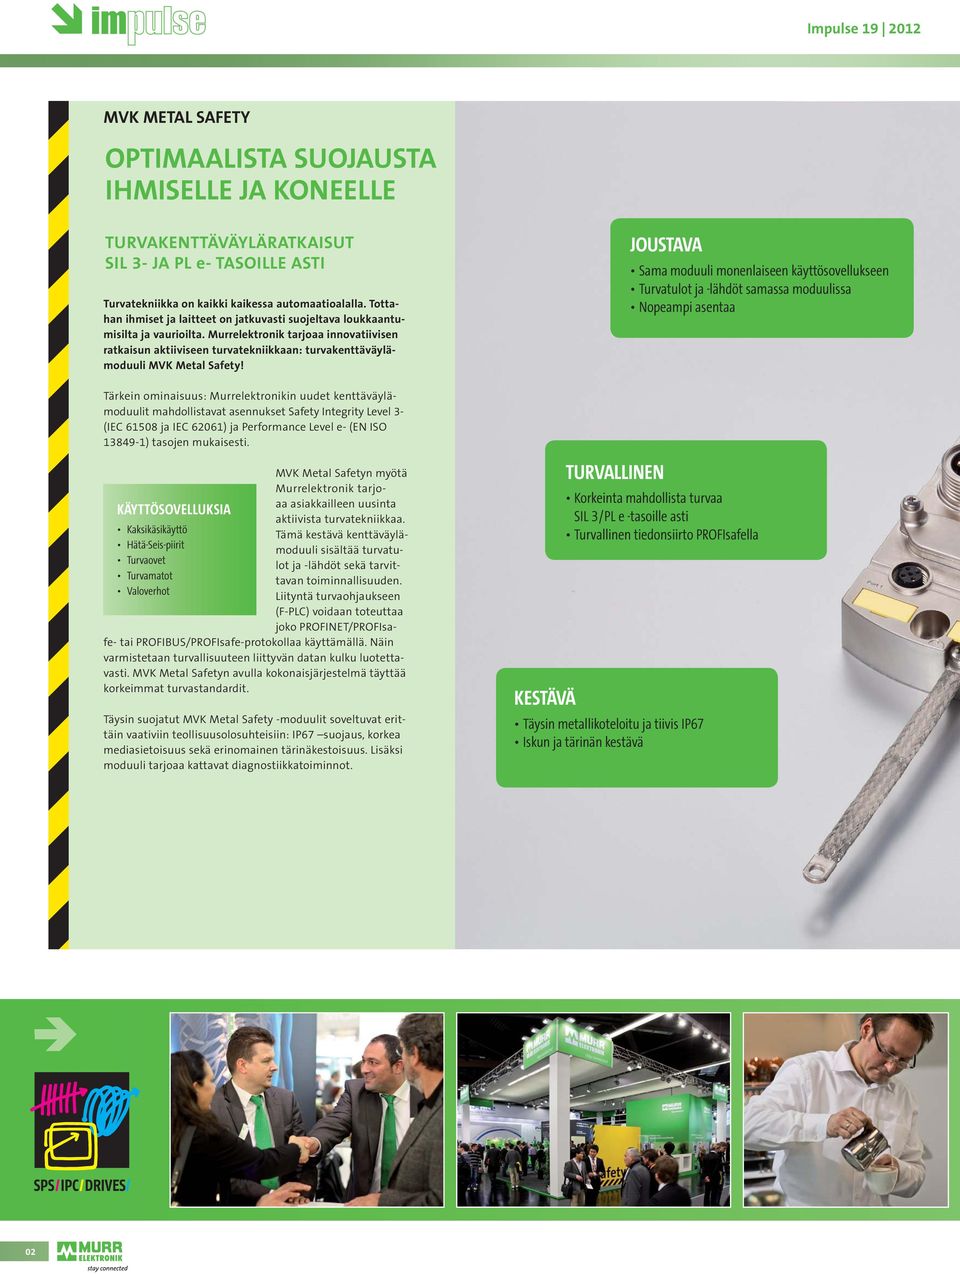 Murrelektronik tarjoaa innovatiivisen ratkaisun aktiiviseen turvatekniikkaan: turvakenttäväylämoduuli MVK Metal Safety!